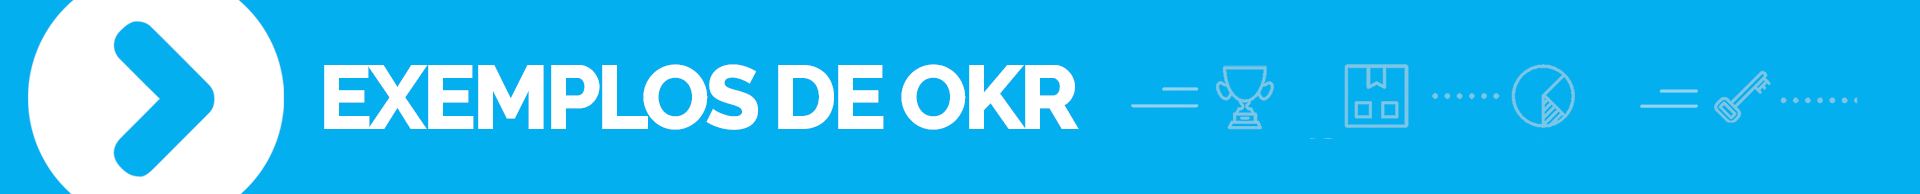 banner azul claro com escritos exemplos de OKR, exemplos de objetivos e resultados chaves, coblue